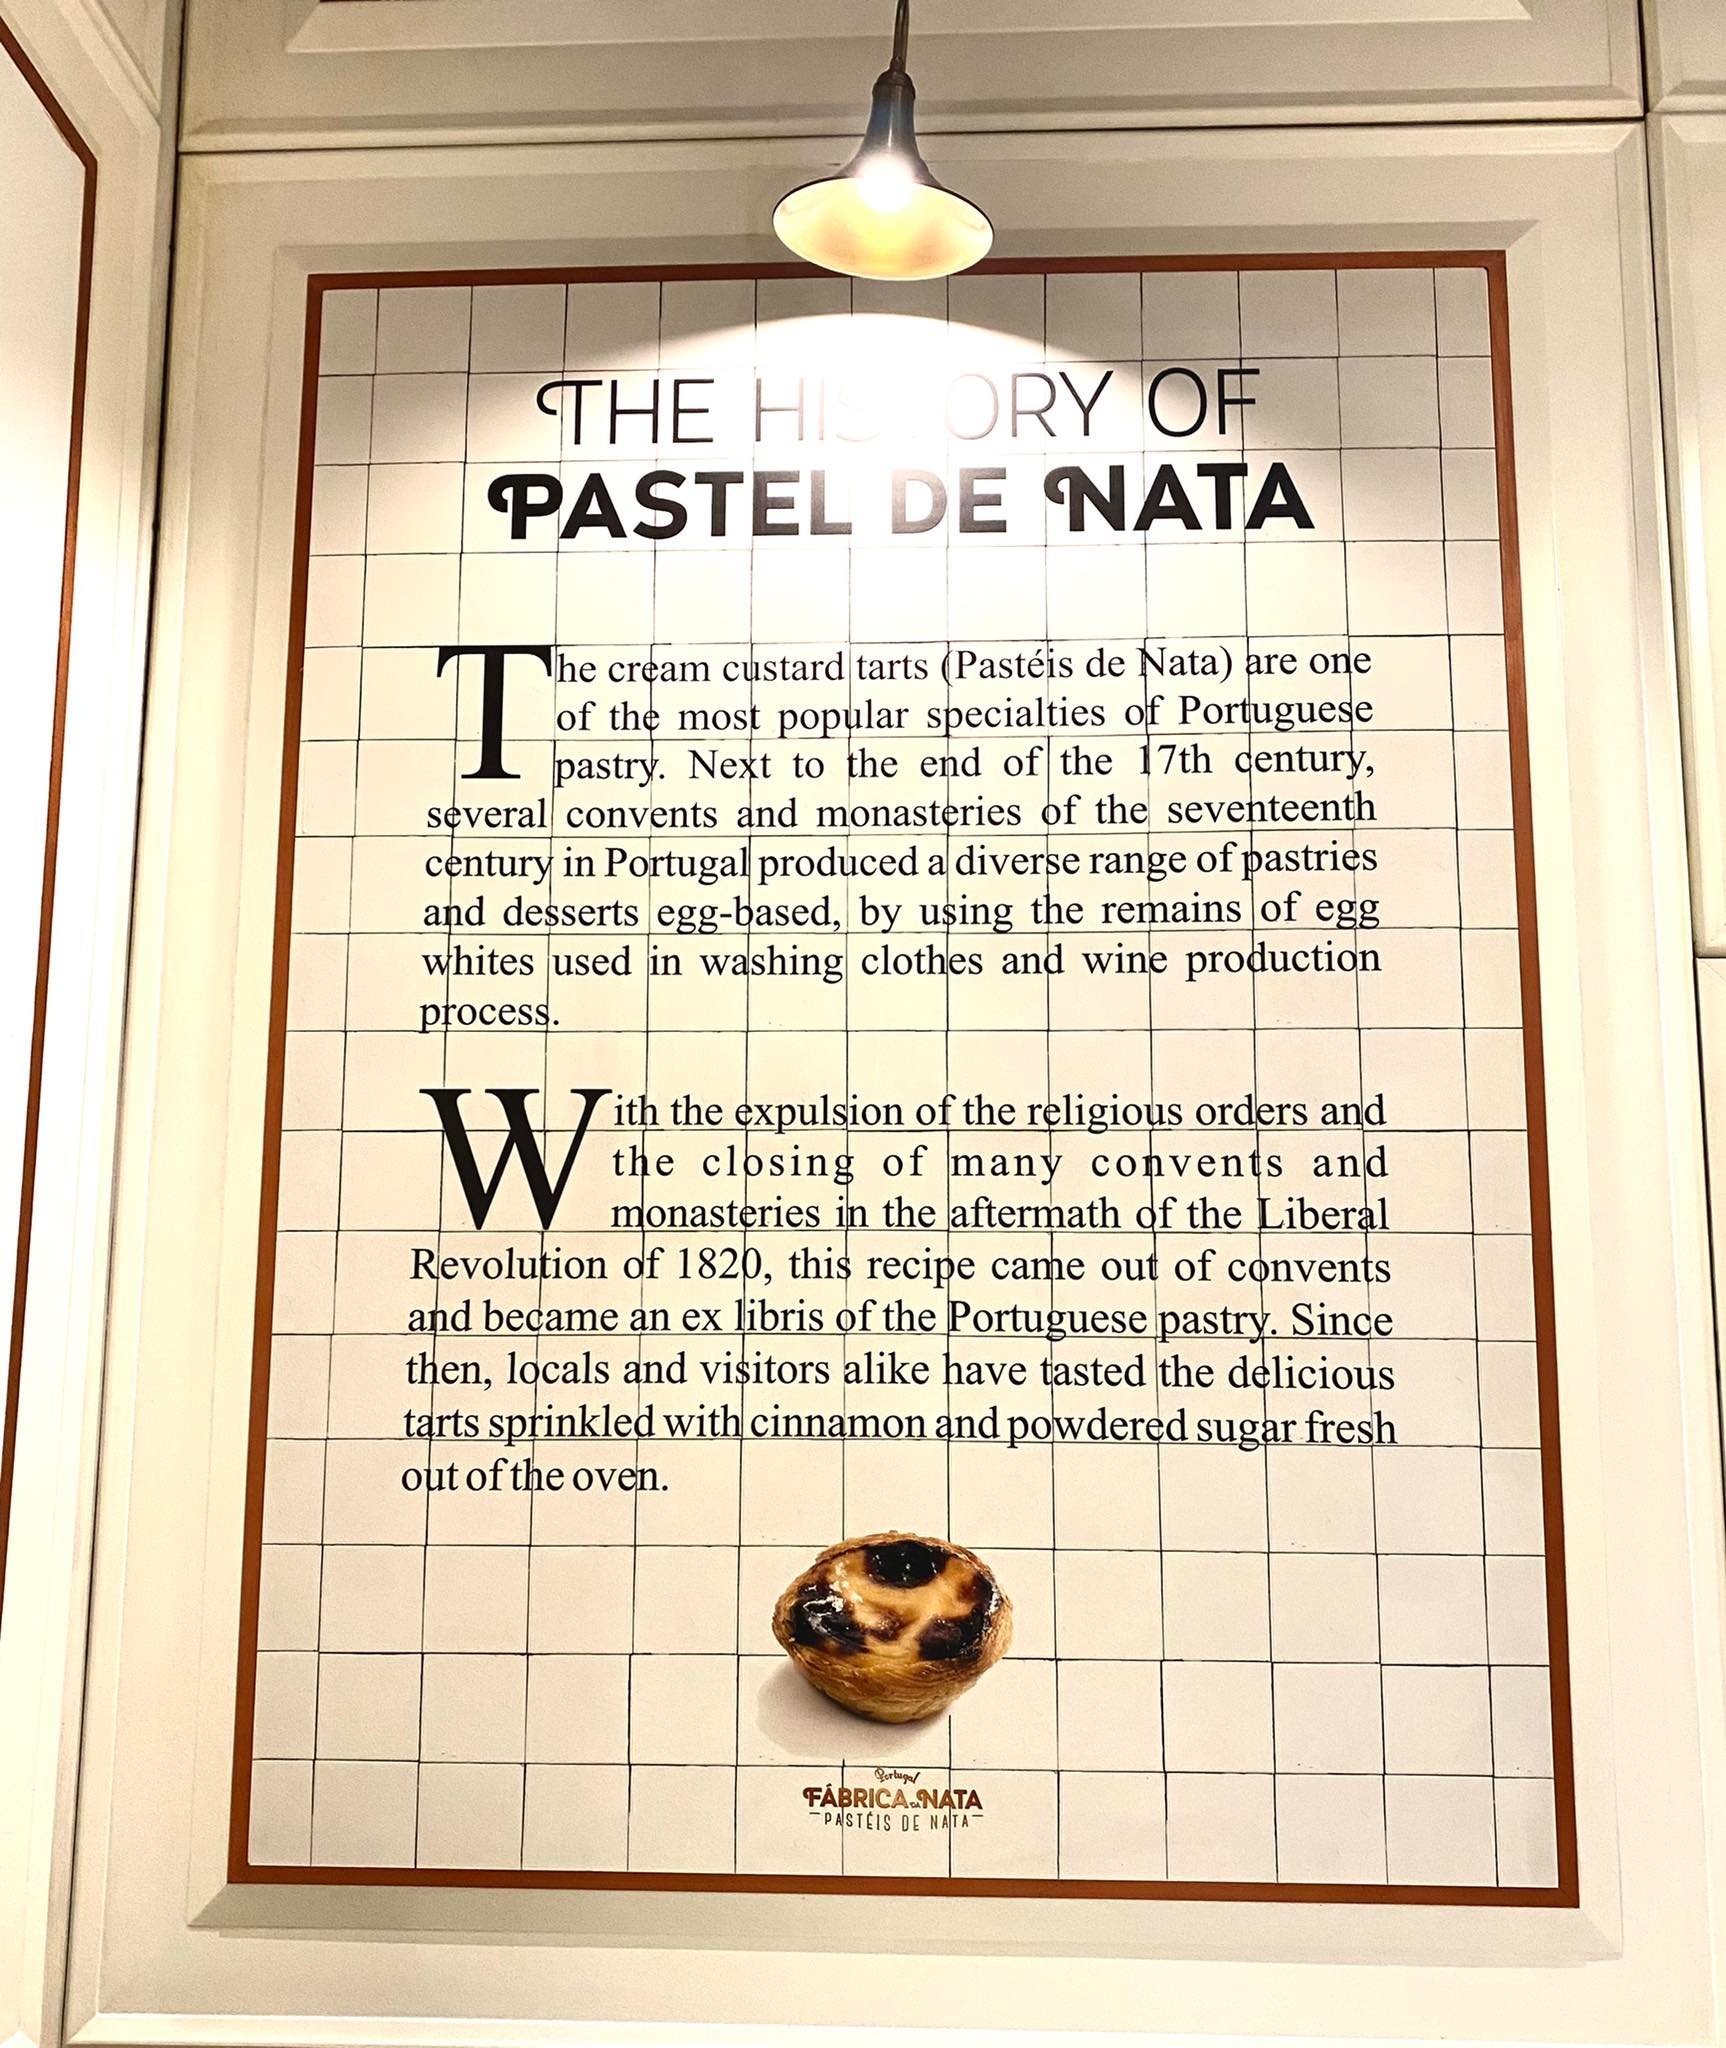 Mint a Fabrica de Nata üzletében csempére írva olvasható, a desszert léte a tojásfehérje iránt borászati és textiltisztítási igények növekedésének köszönhető. 